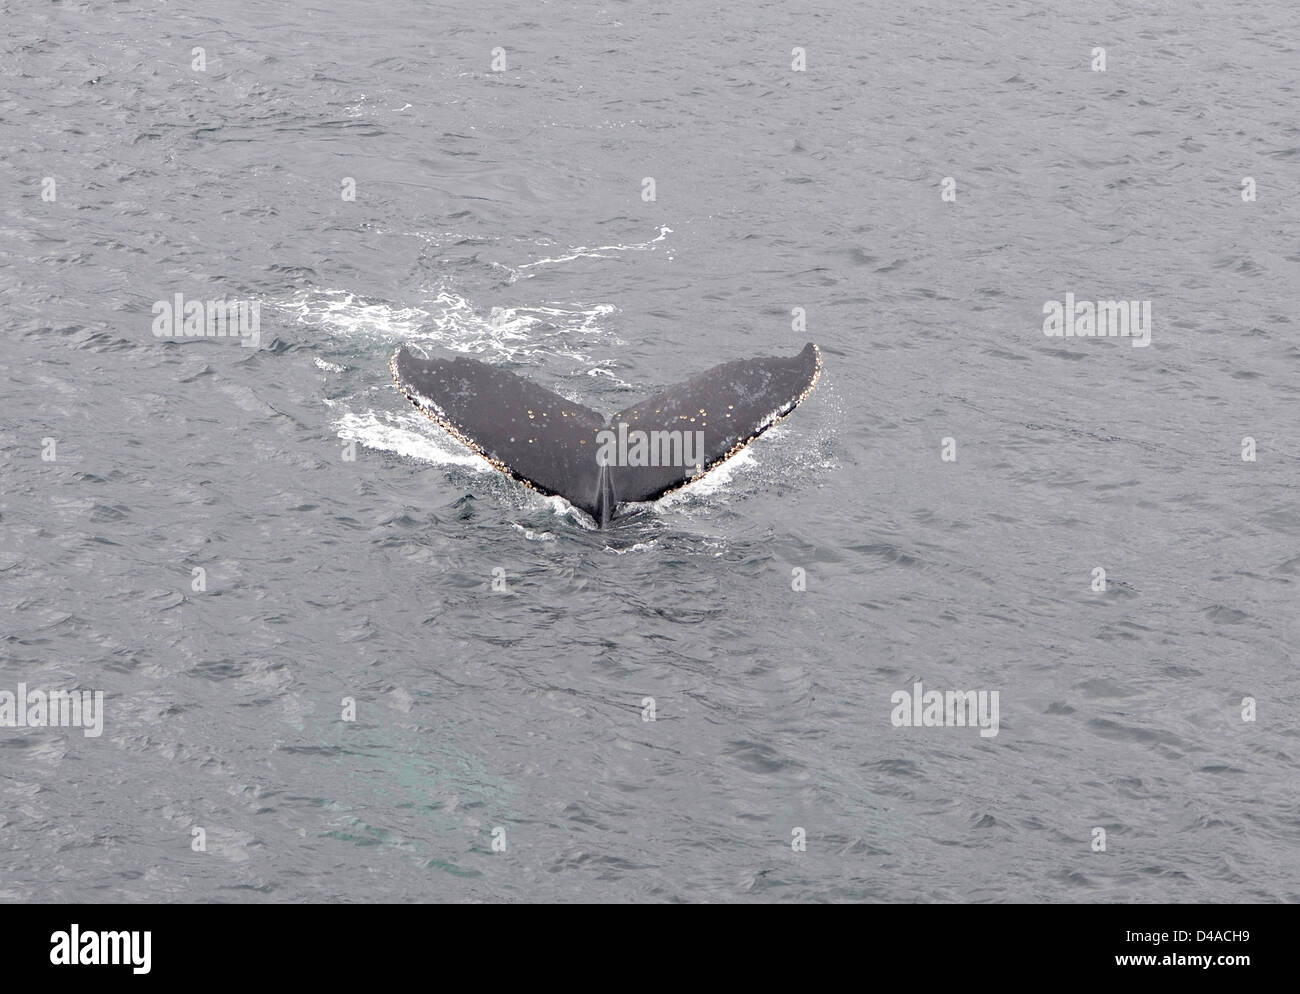 La parte superior de la cola de una ballena jorobada (Megaptera novaeangliae), ya que las inmersiones. El Parque Marino Francisco Coloane, Chile Foto de stock